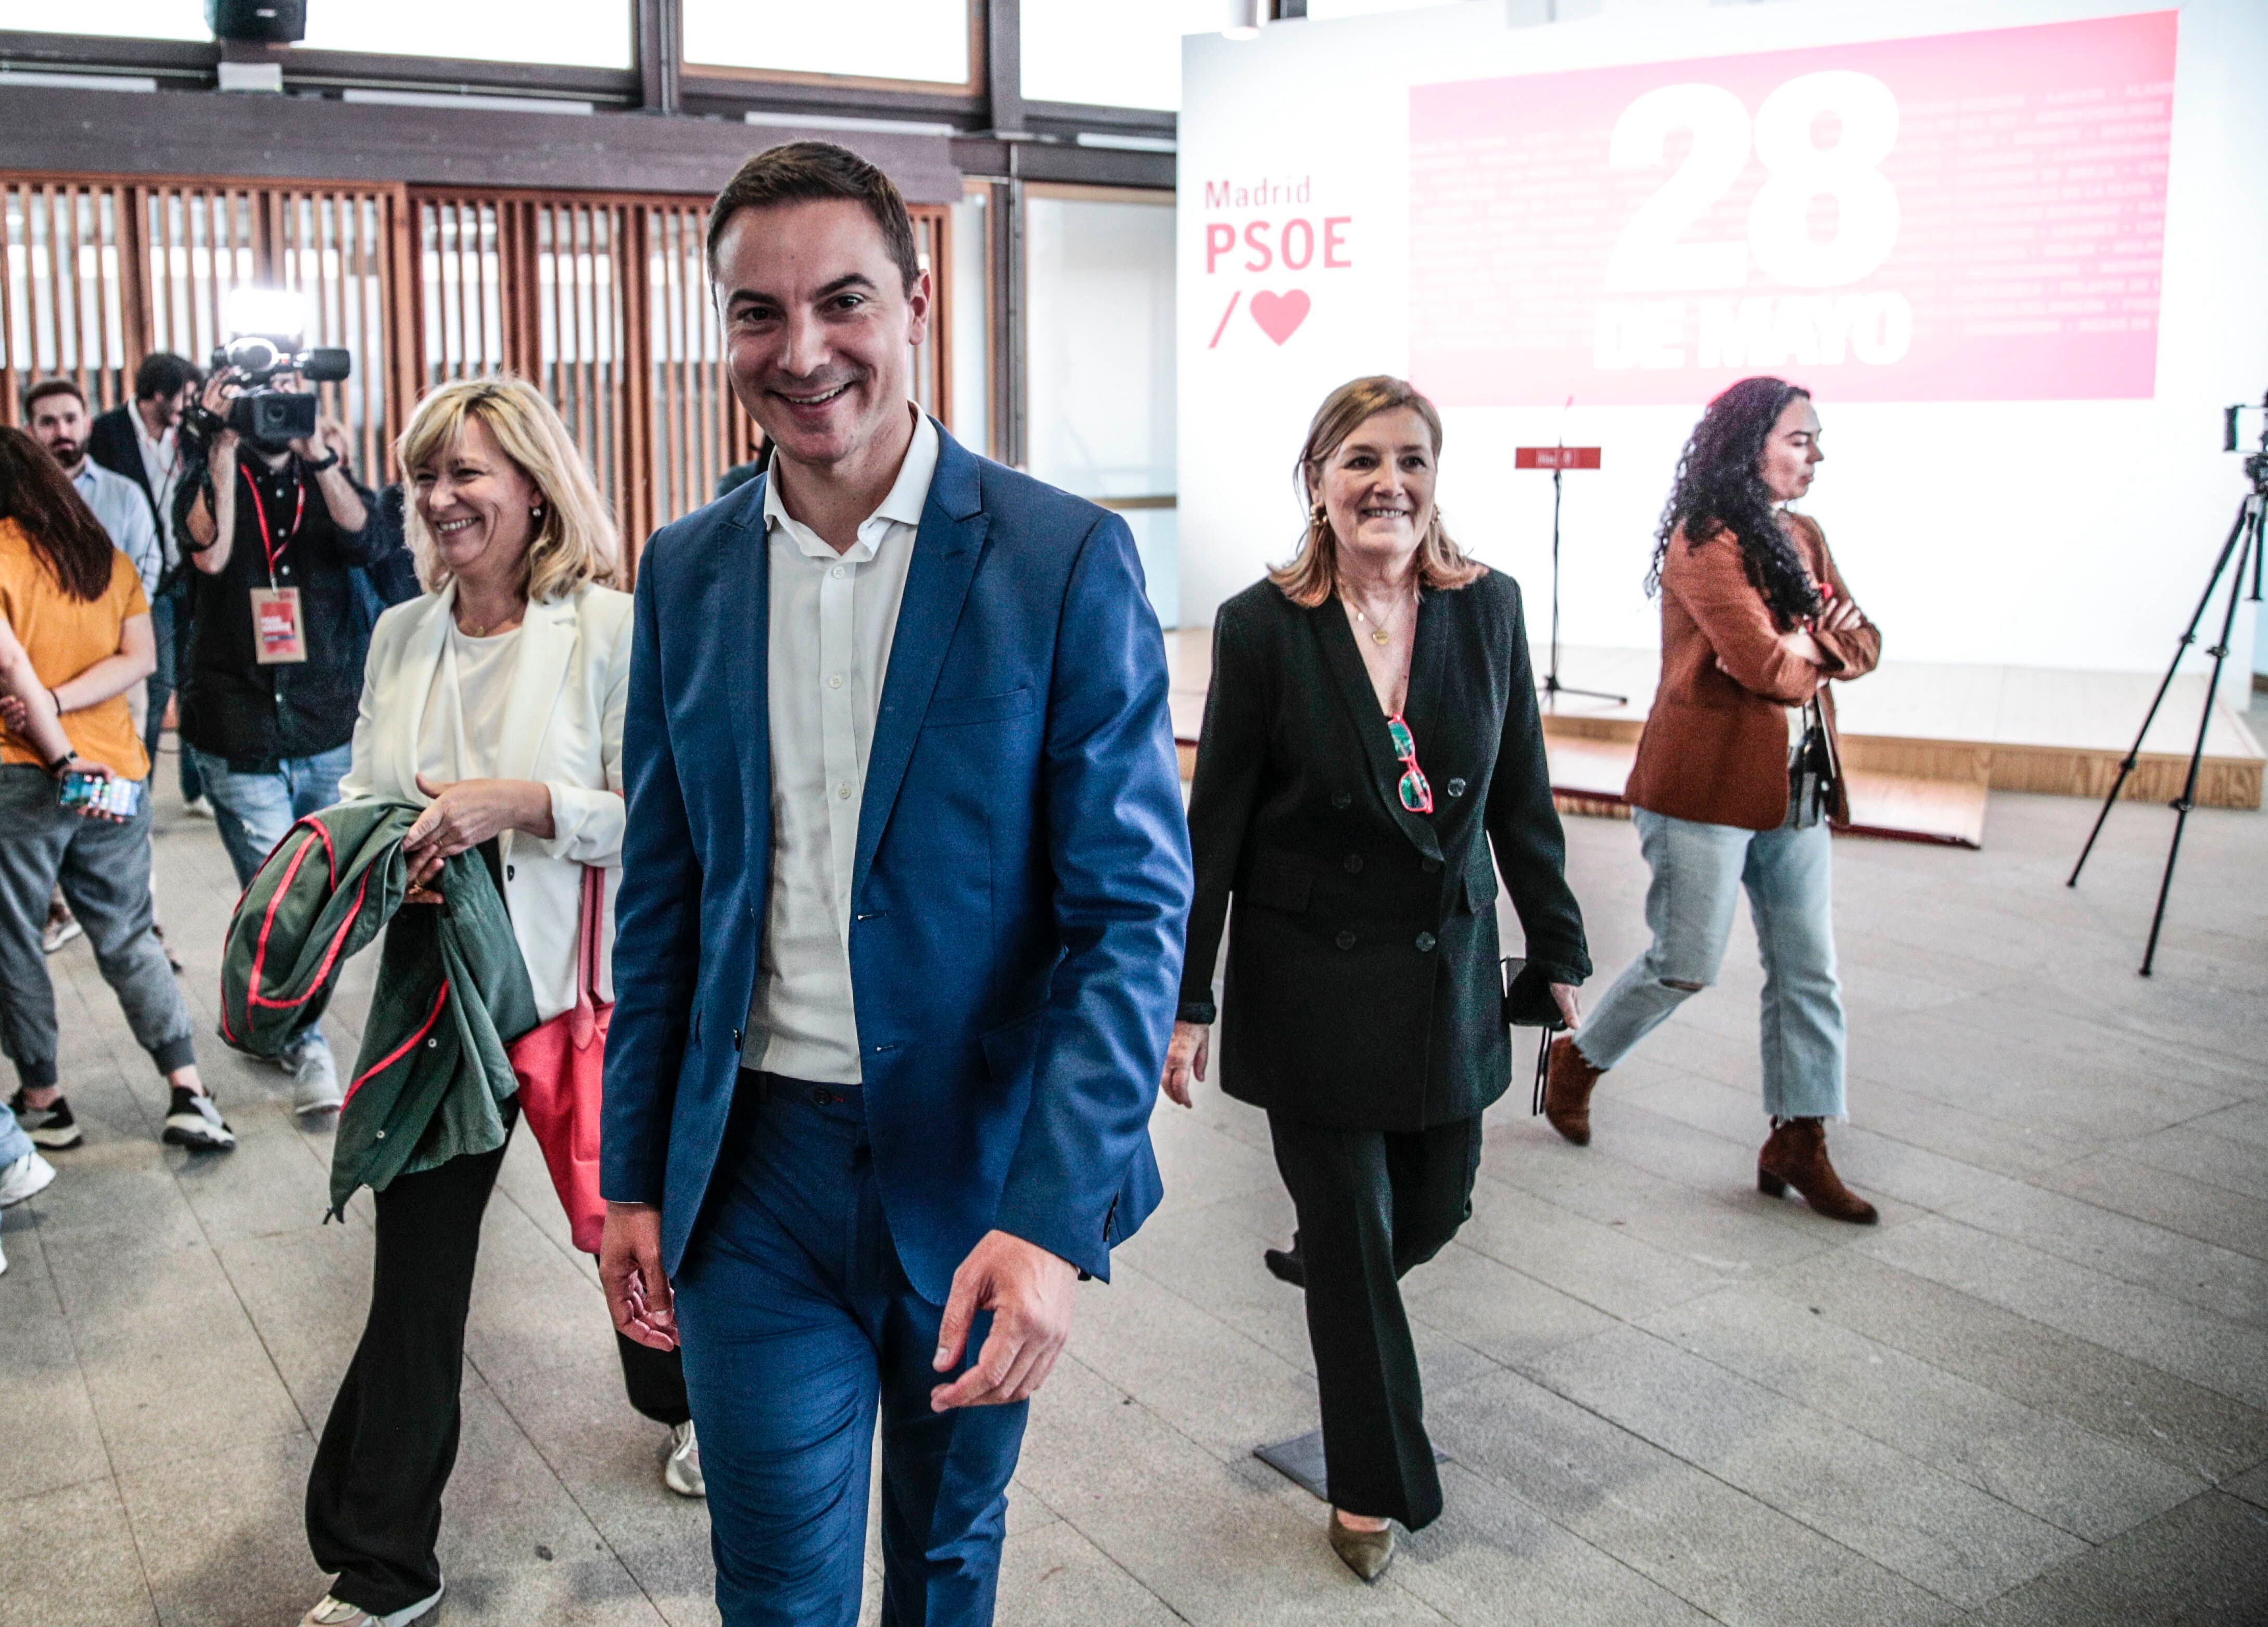 El candidato del PSOE a la presidencia de la Comunidad de Madrid, Juan Lobato, acude al Colegio Oficial de Arquitectos de Madrid (COAM), donde los socialistas madrileños celebrarán la noche electoral, acompañados de sus familias.